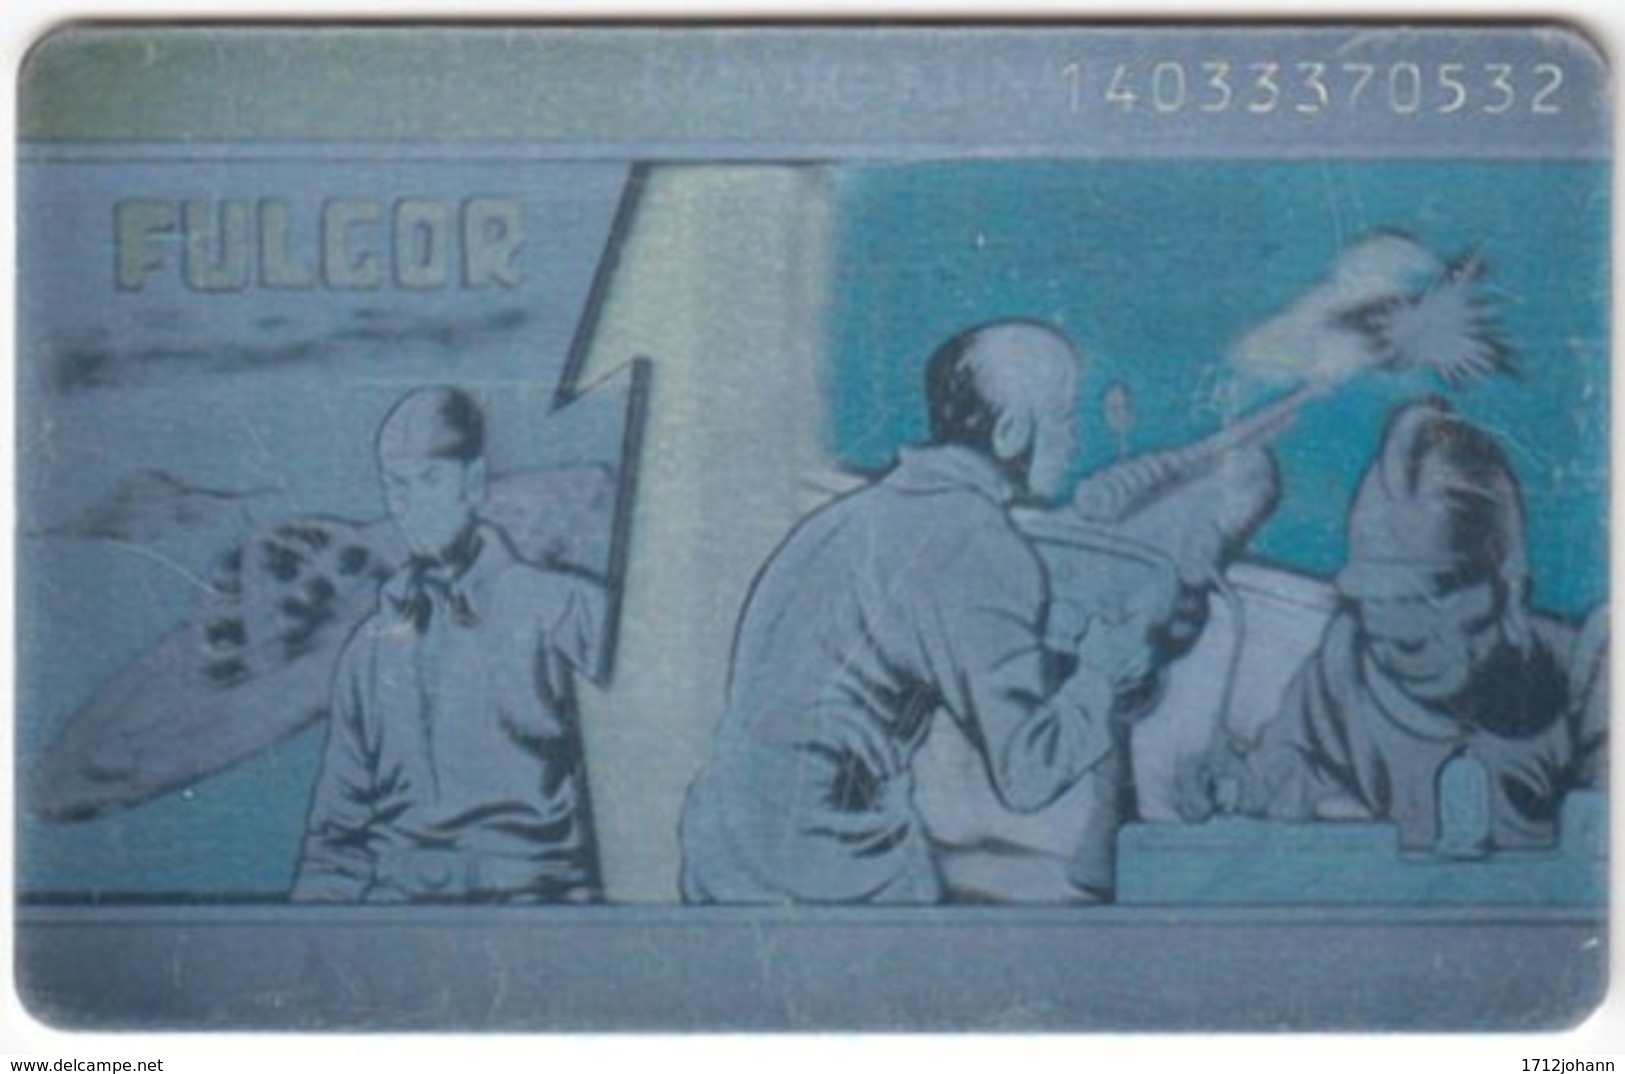 GERMANY S-Serie B-259 - Hologram, Comics, Fulcor (1403) - Used - S-Series : Guichets Publicité De Tiers